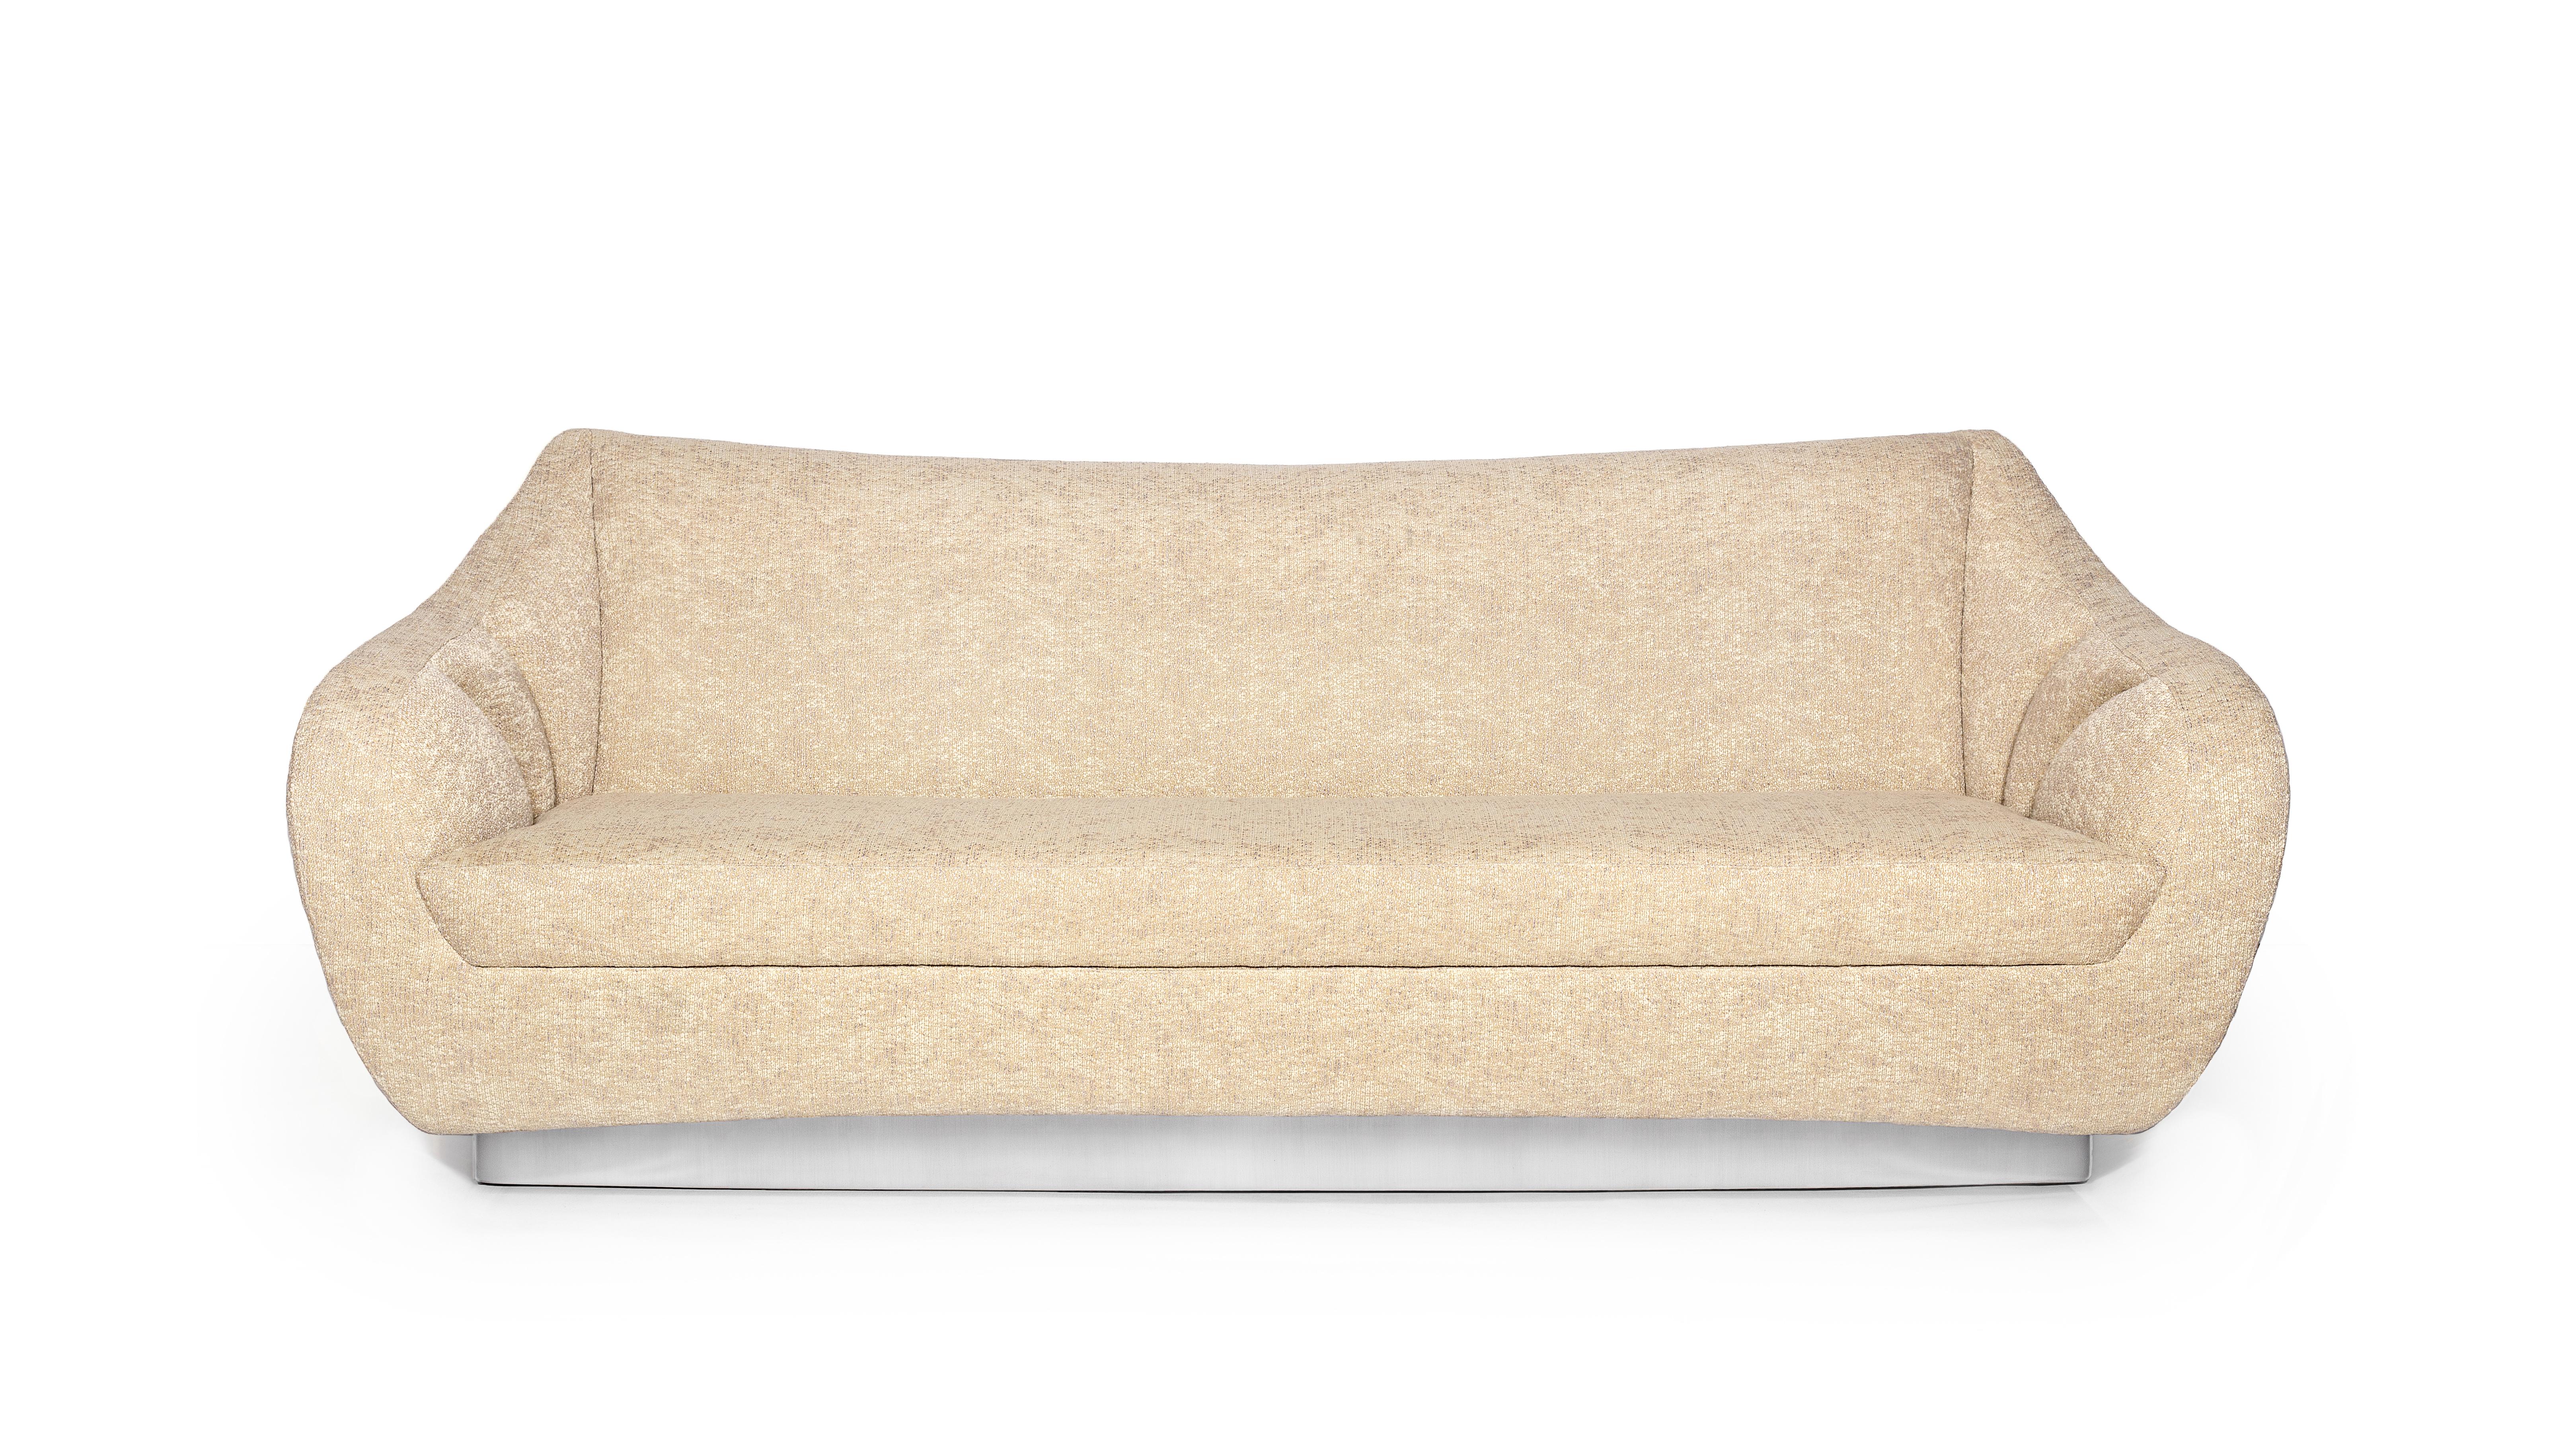 Figueroa 3-Sitz-Sofa von InsidherLand
Abmessungen: T 90 x B 230 x H 90 cm.
MATERIALIEN: Gebürsteter Edelstahl, InsidherLand Blend Ref. 5 Stoff.
95 kg.
Erhältlich in verschiedenen Stoffen.

Im sonnigen Kalifornien im Südwesten der Vereinigten Staaten